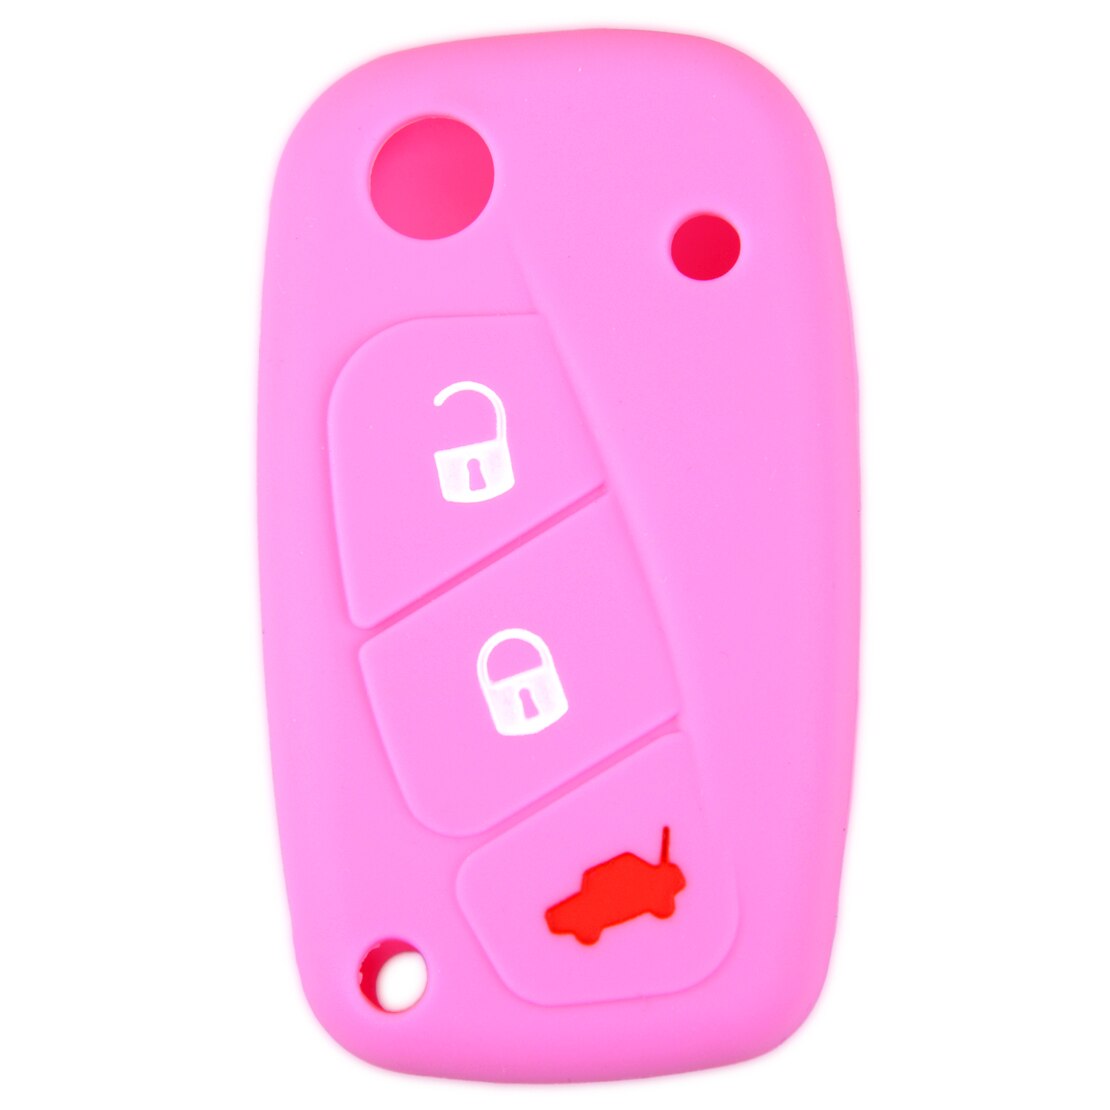 DWCX Car 3 Button Silicone Remote Key Cover Case Fob Shell Holder Fit for Fiat Punto Panda Idea Stilo 2007 Ducato: Pink